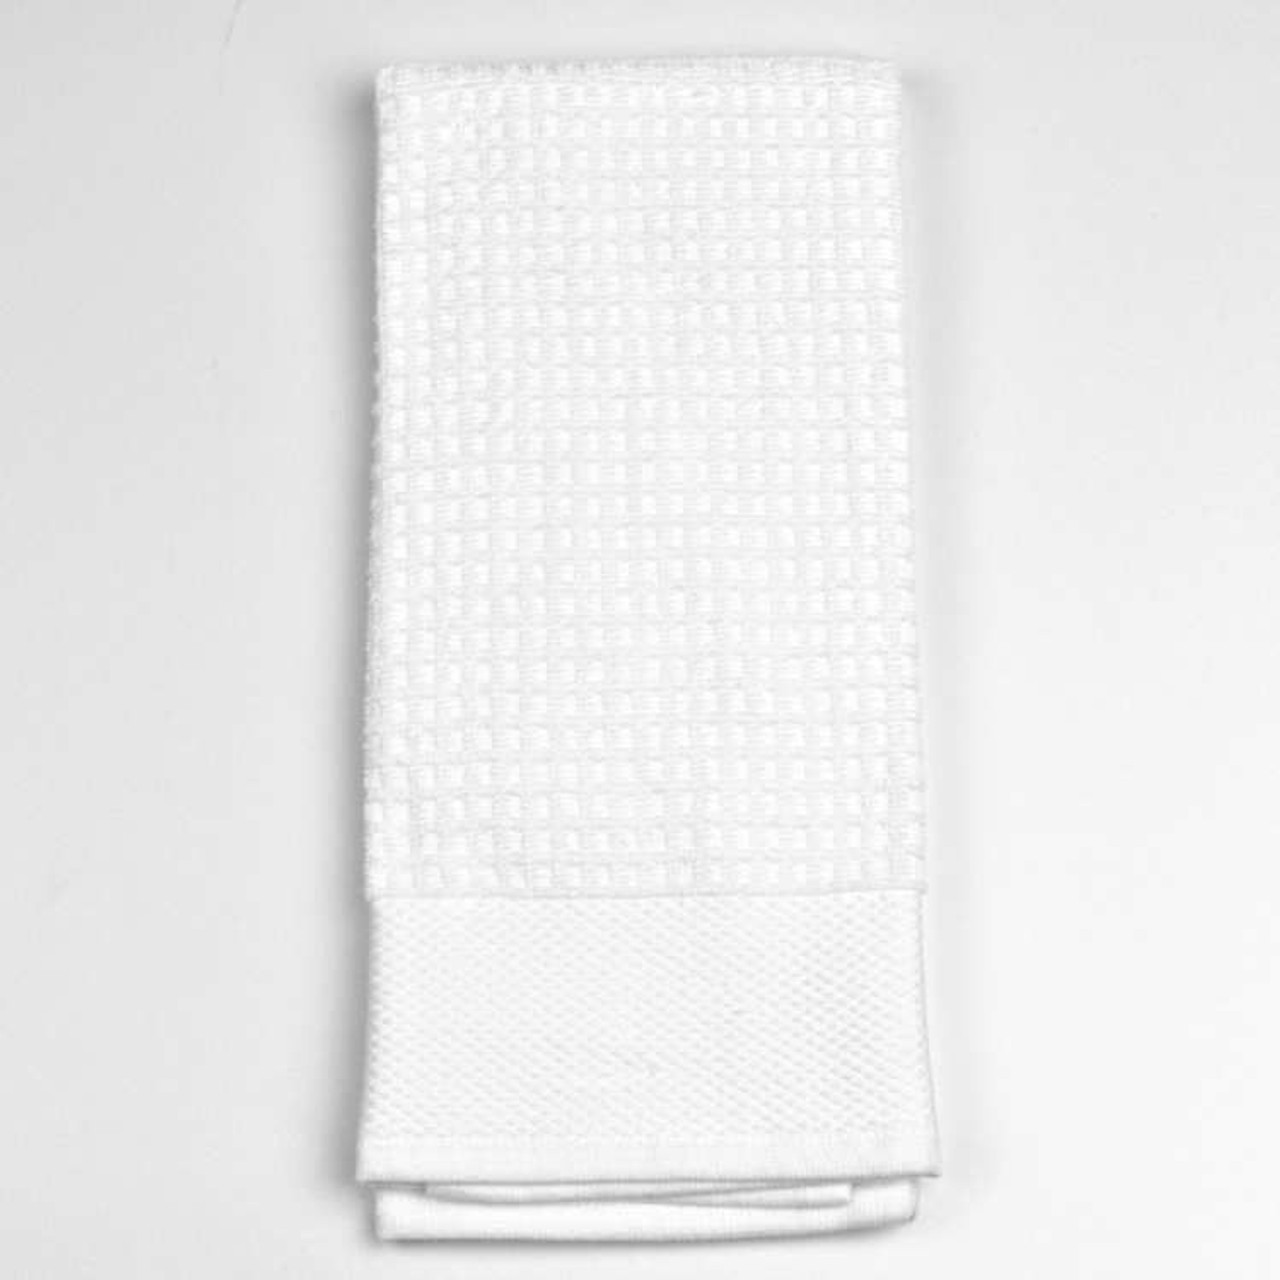 Palmetto Home White Kitchen Towels